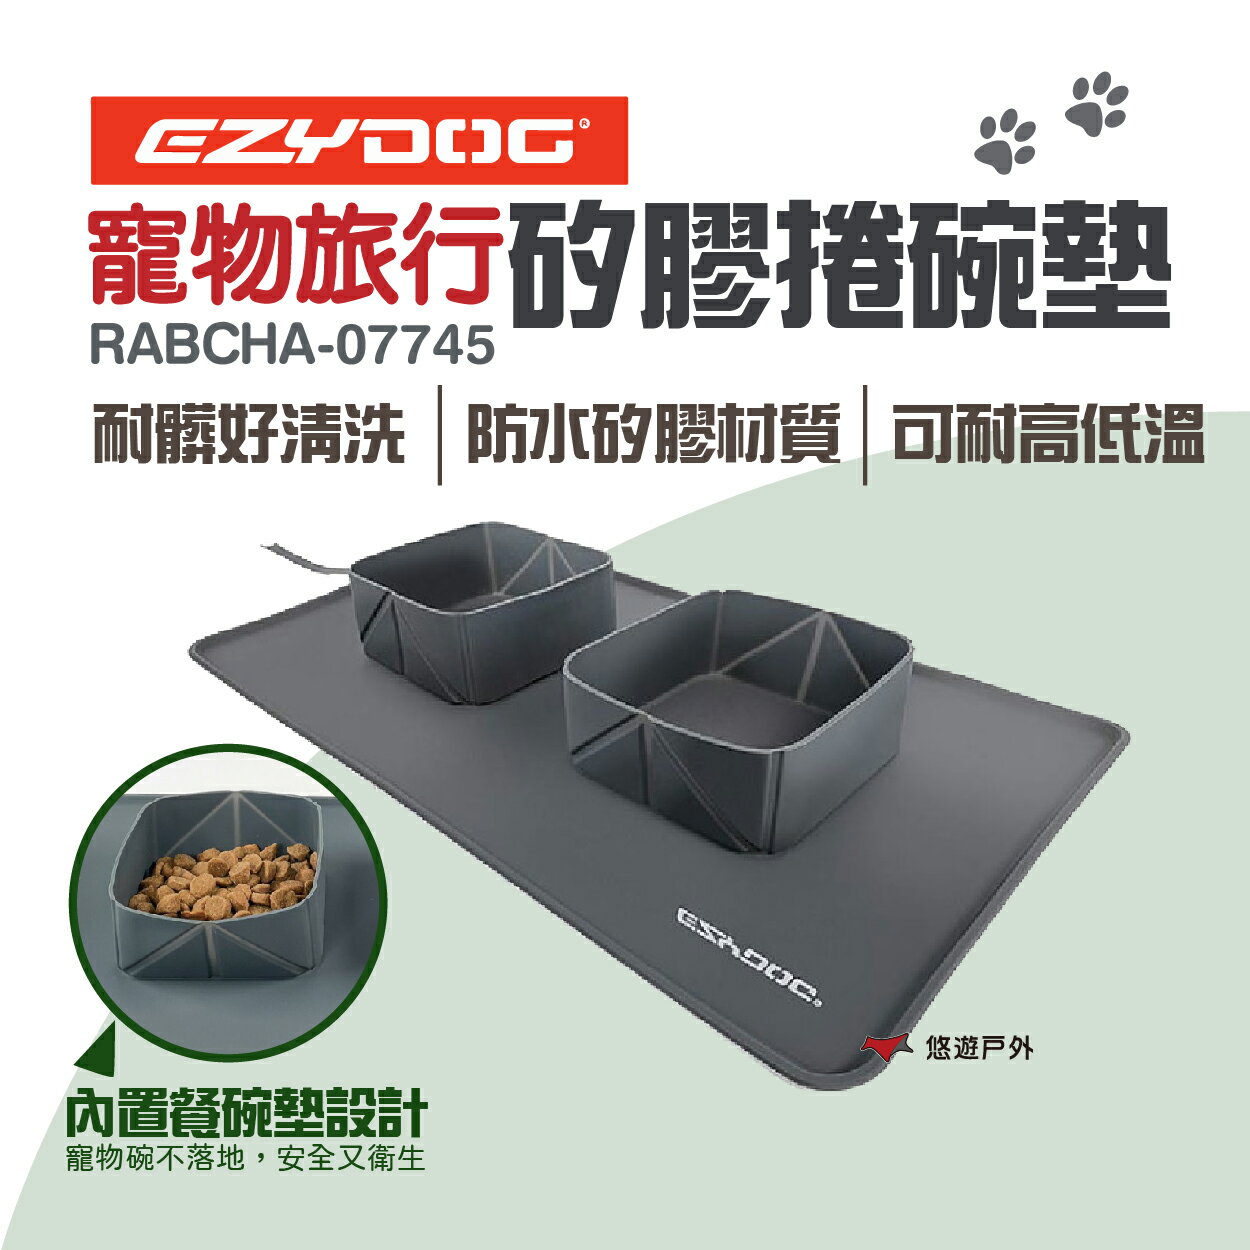 【EZYDOG】 寵物旅行矽膠捲碗墊 RABCHA-07745 寵物用品 野炊 露營 悠遊戶外